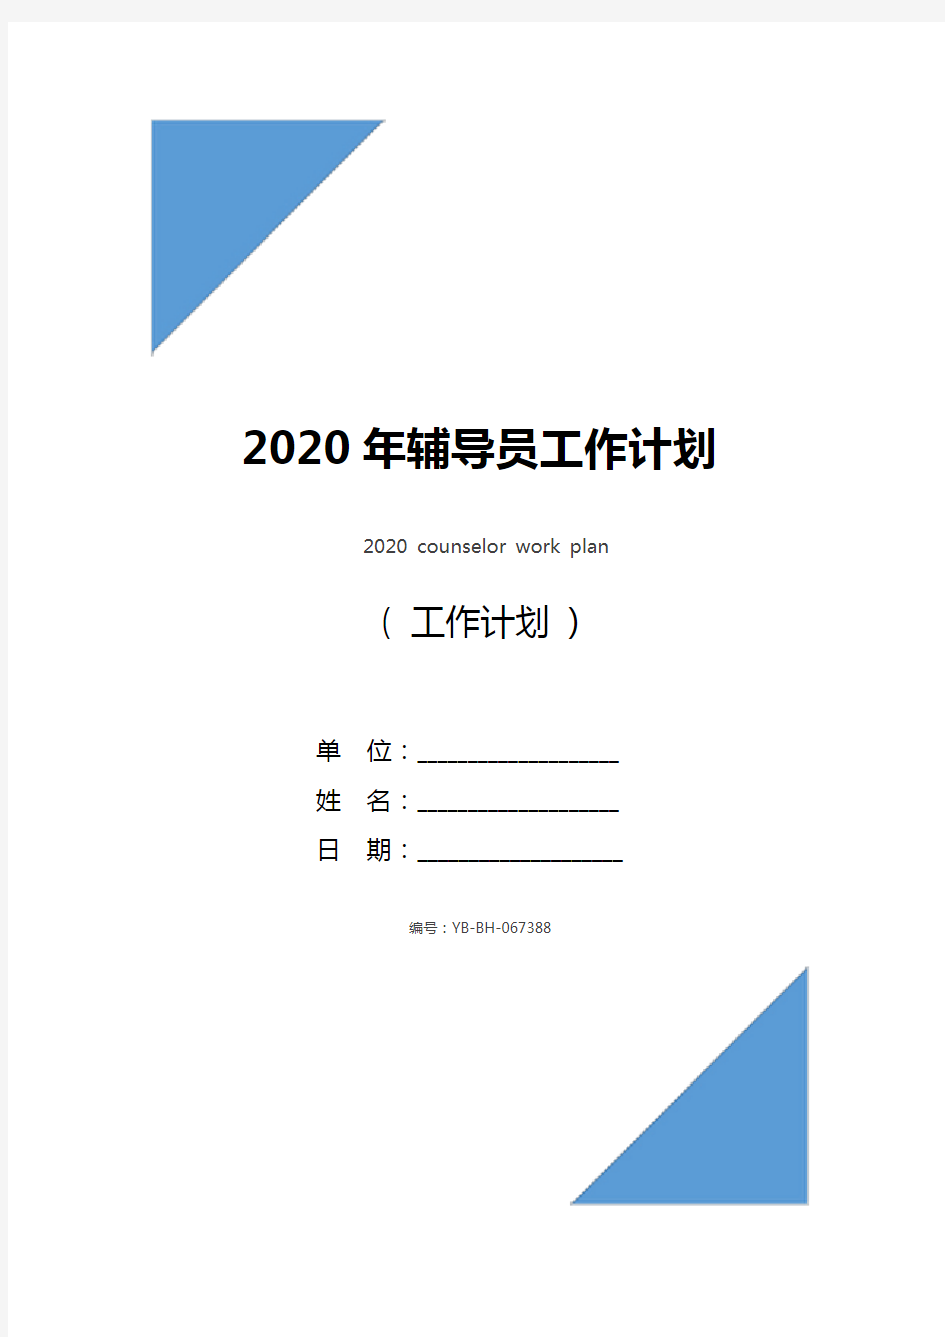 2020年辅导员工作计划